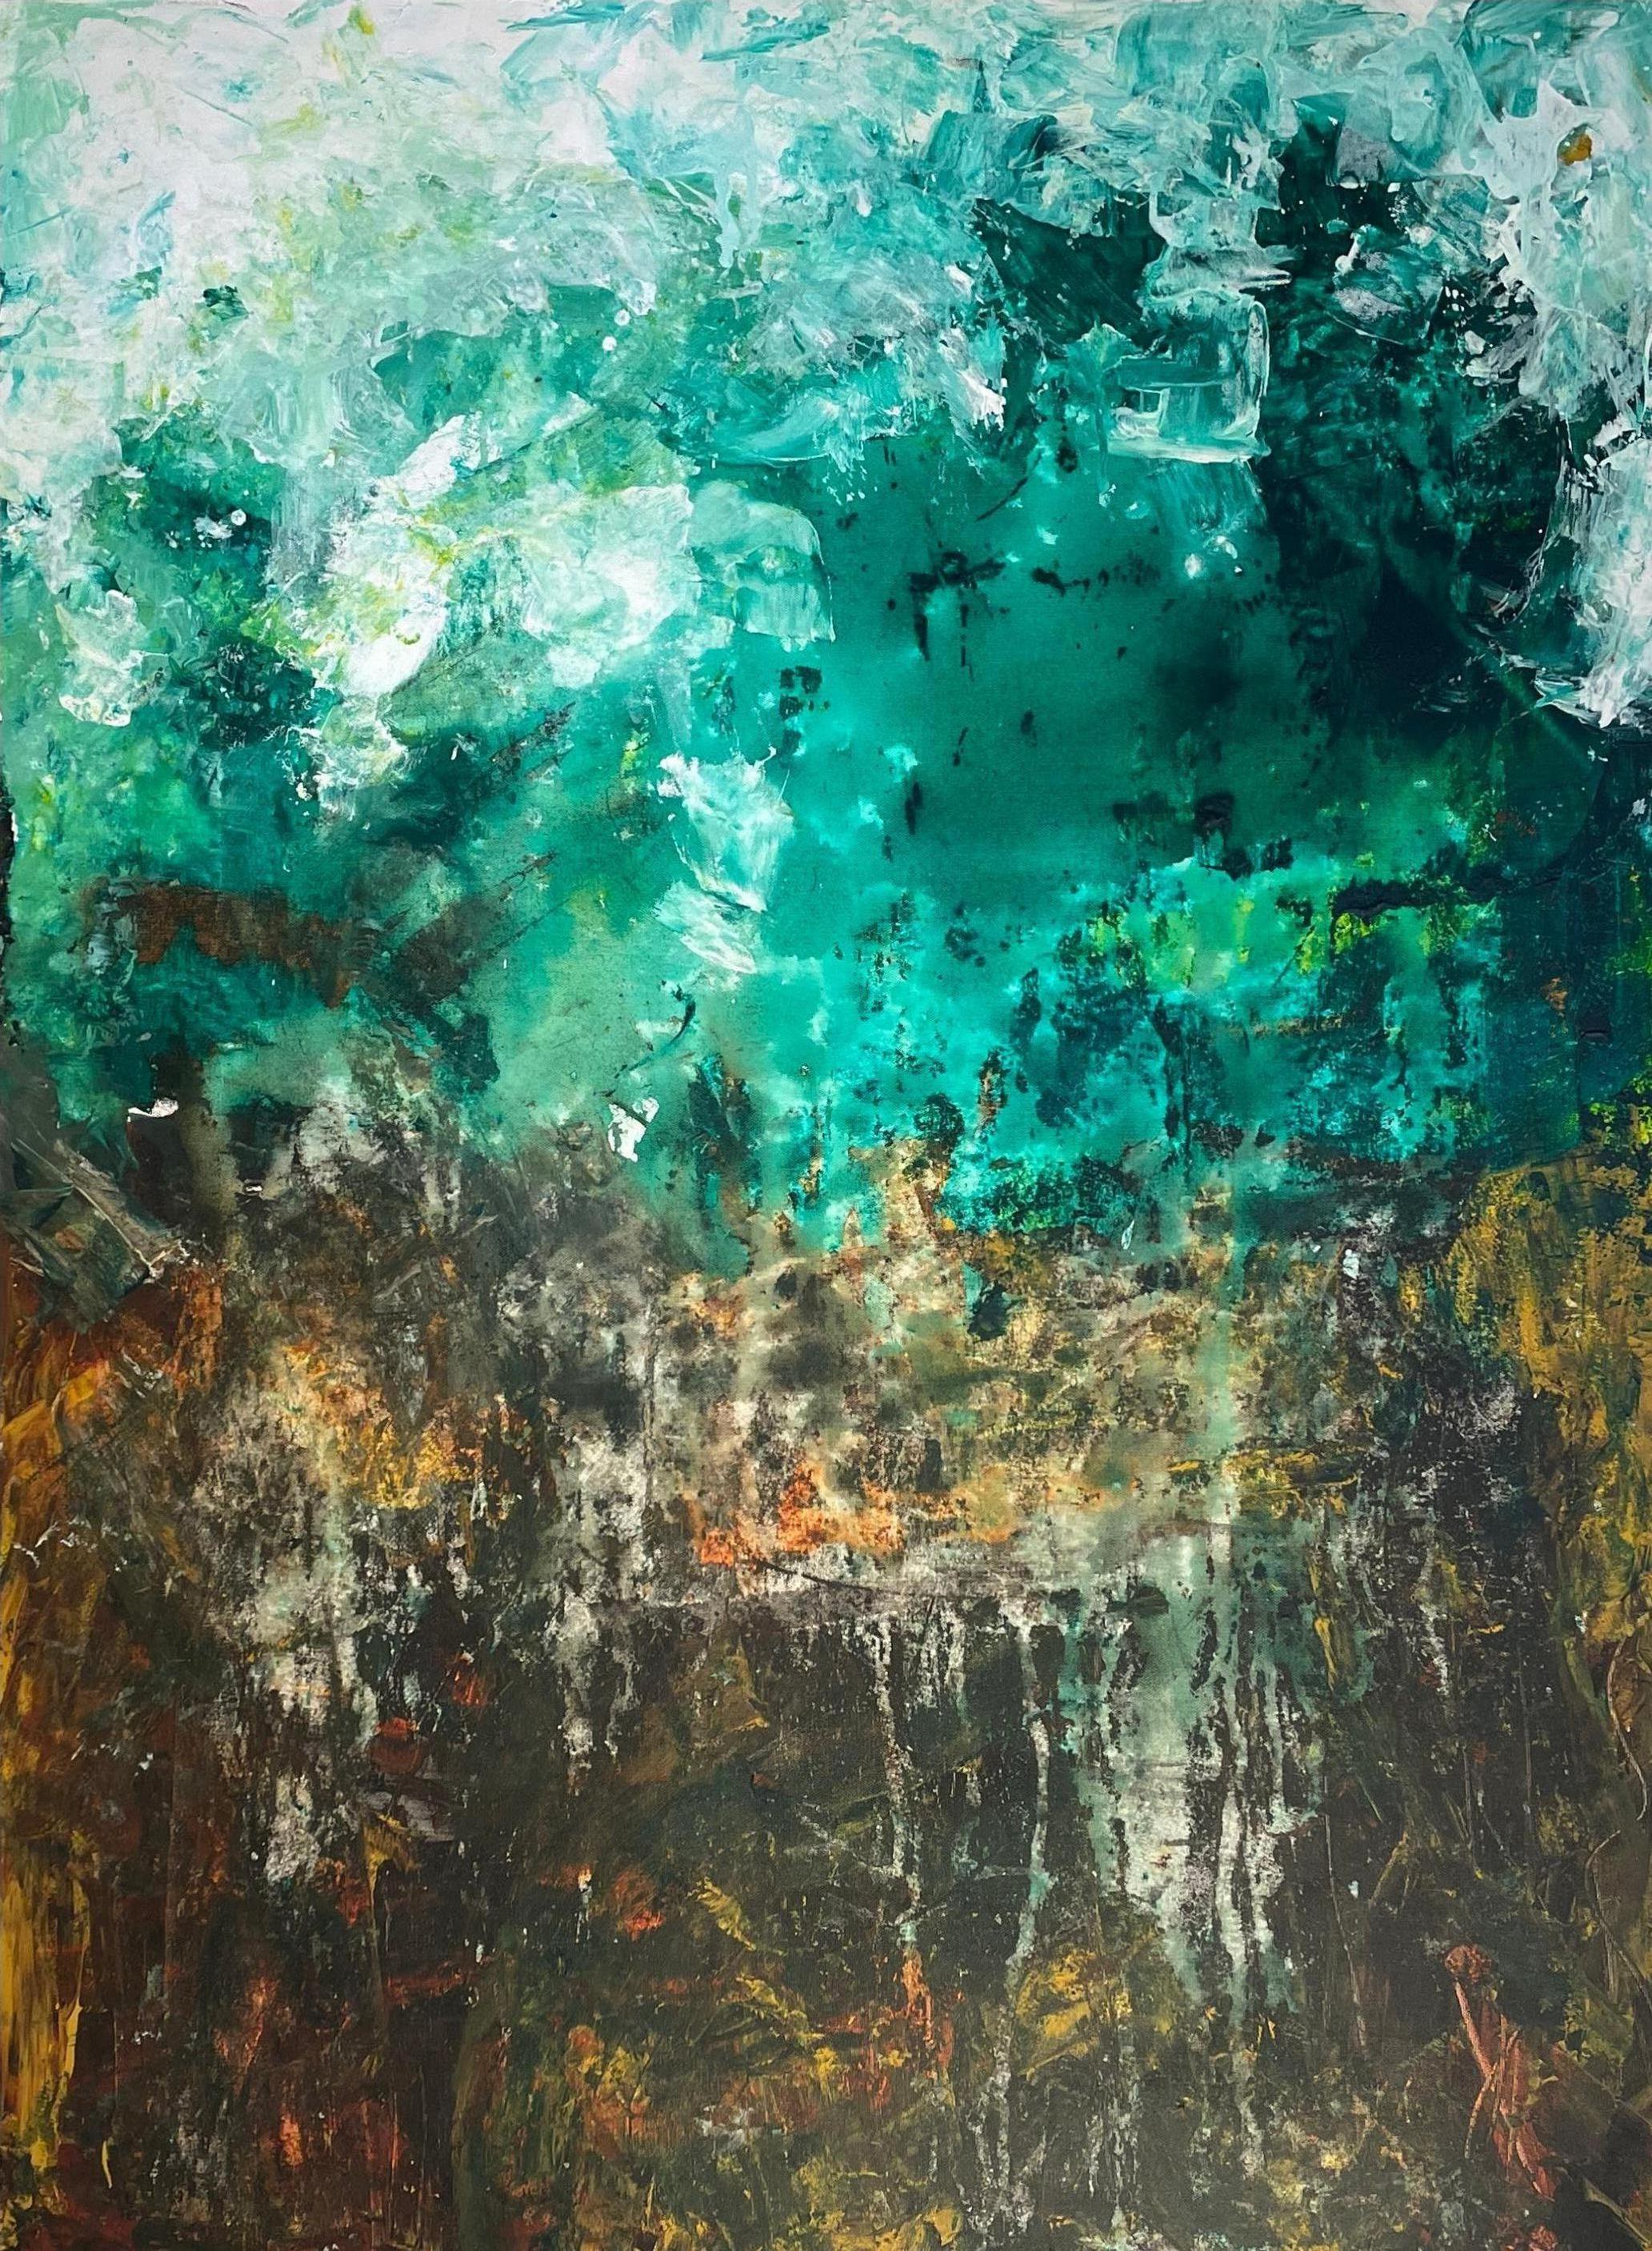 Abstract Painting Nan Van Ryzin - « Emerald Whispers », expressionniste abstraite technique mixte du 21e siècle par Nan 